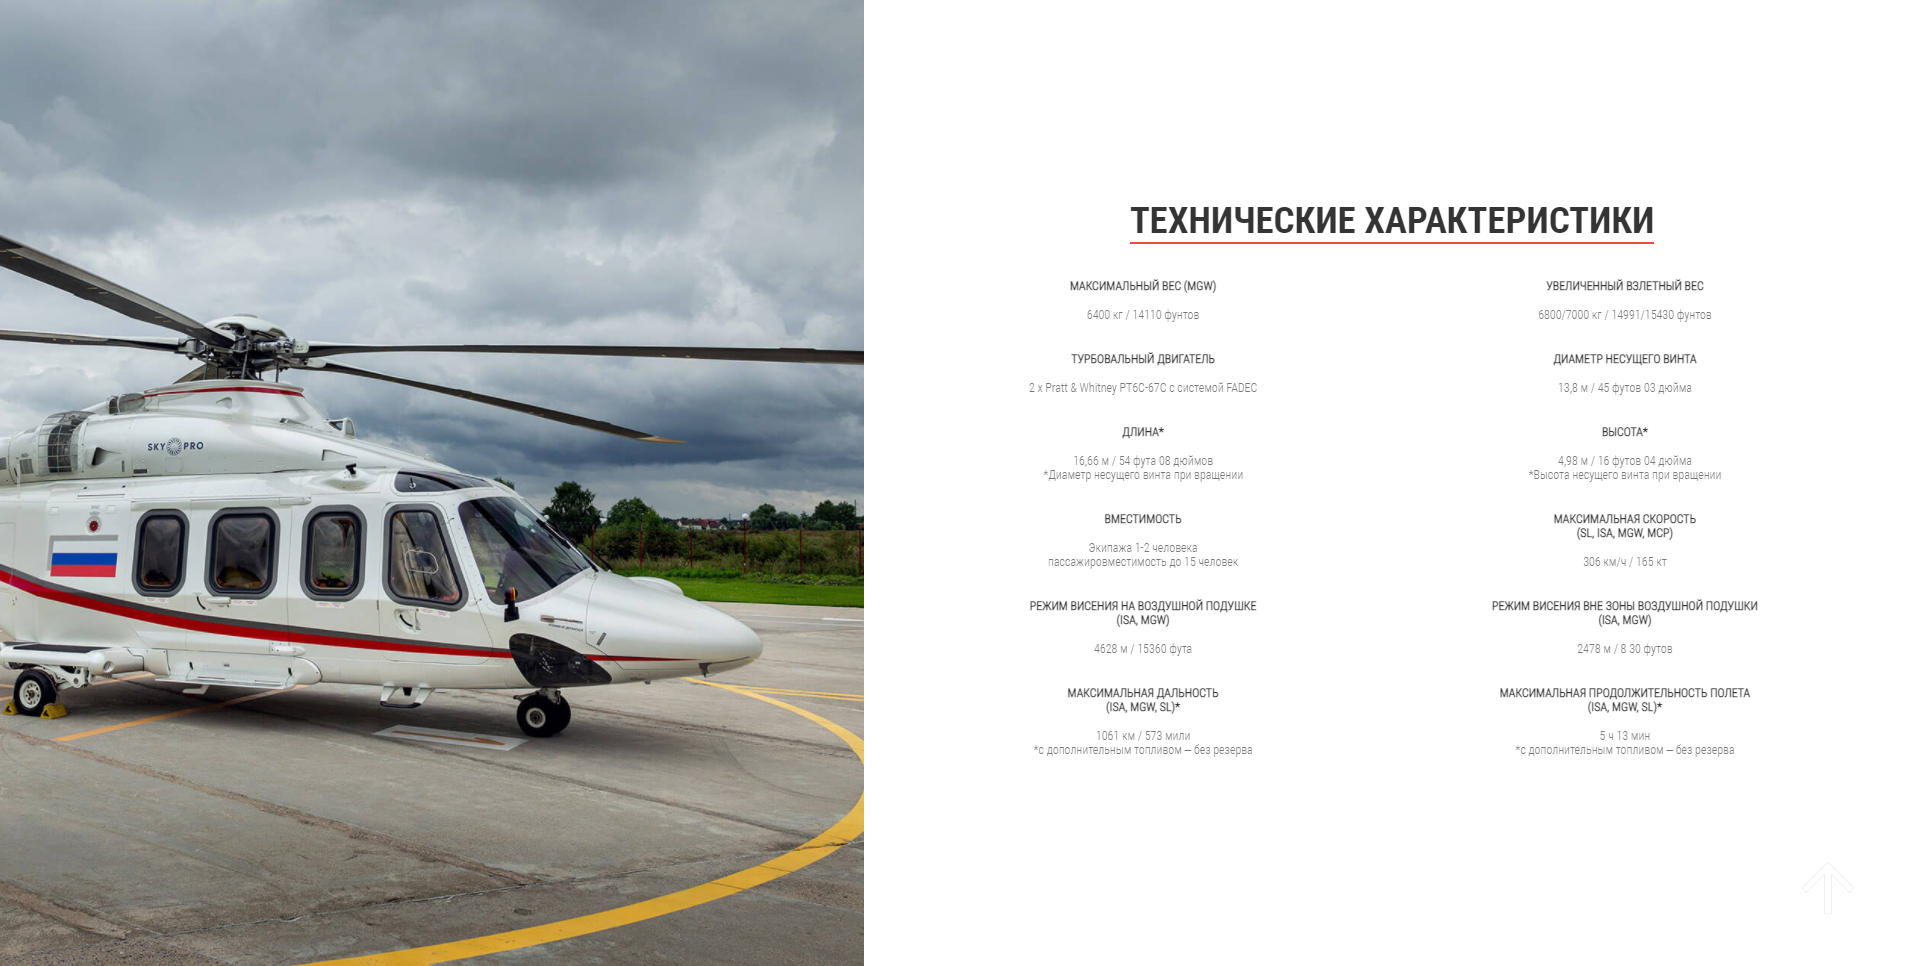 зао «хеливерт» - совместное предприятие ао «вертолеты россии» и компании «leonardo s.p.a helicopter division»